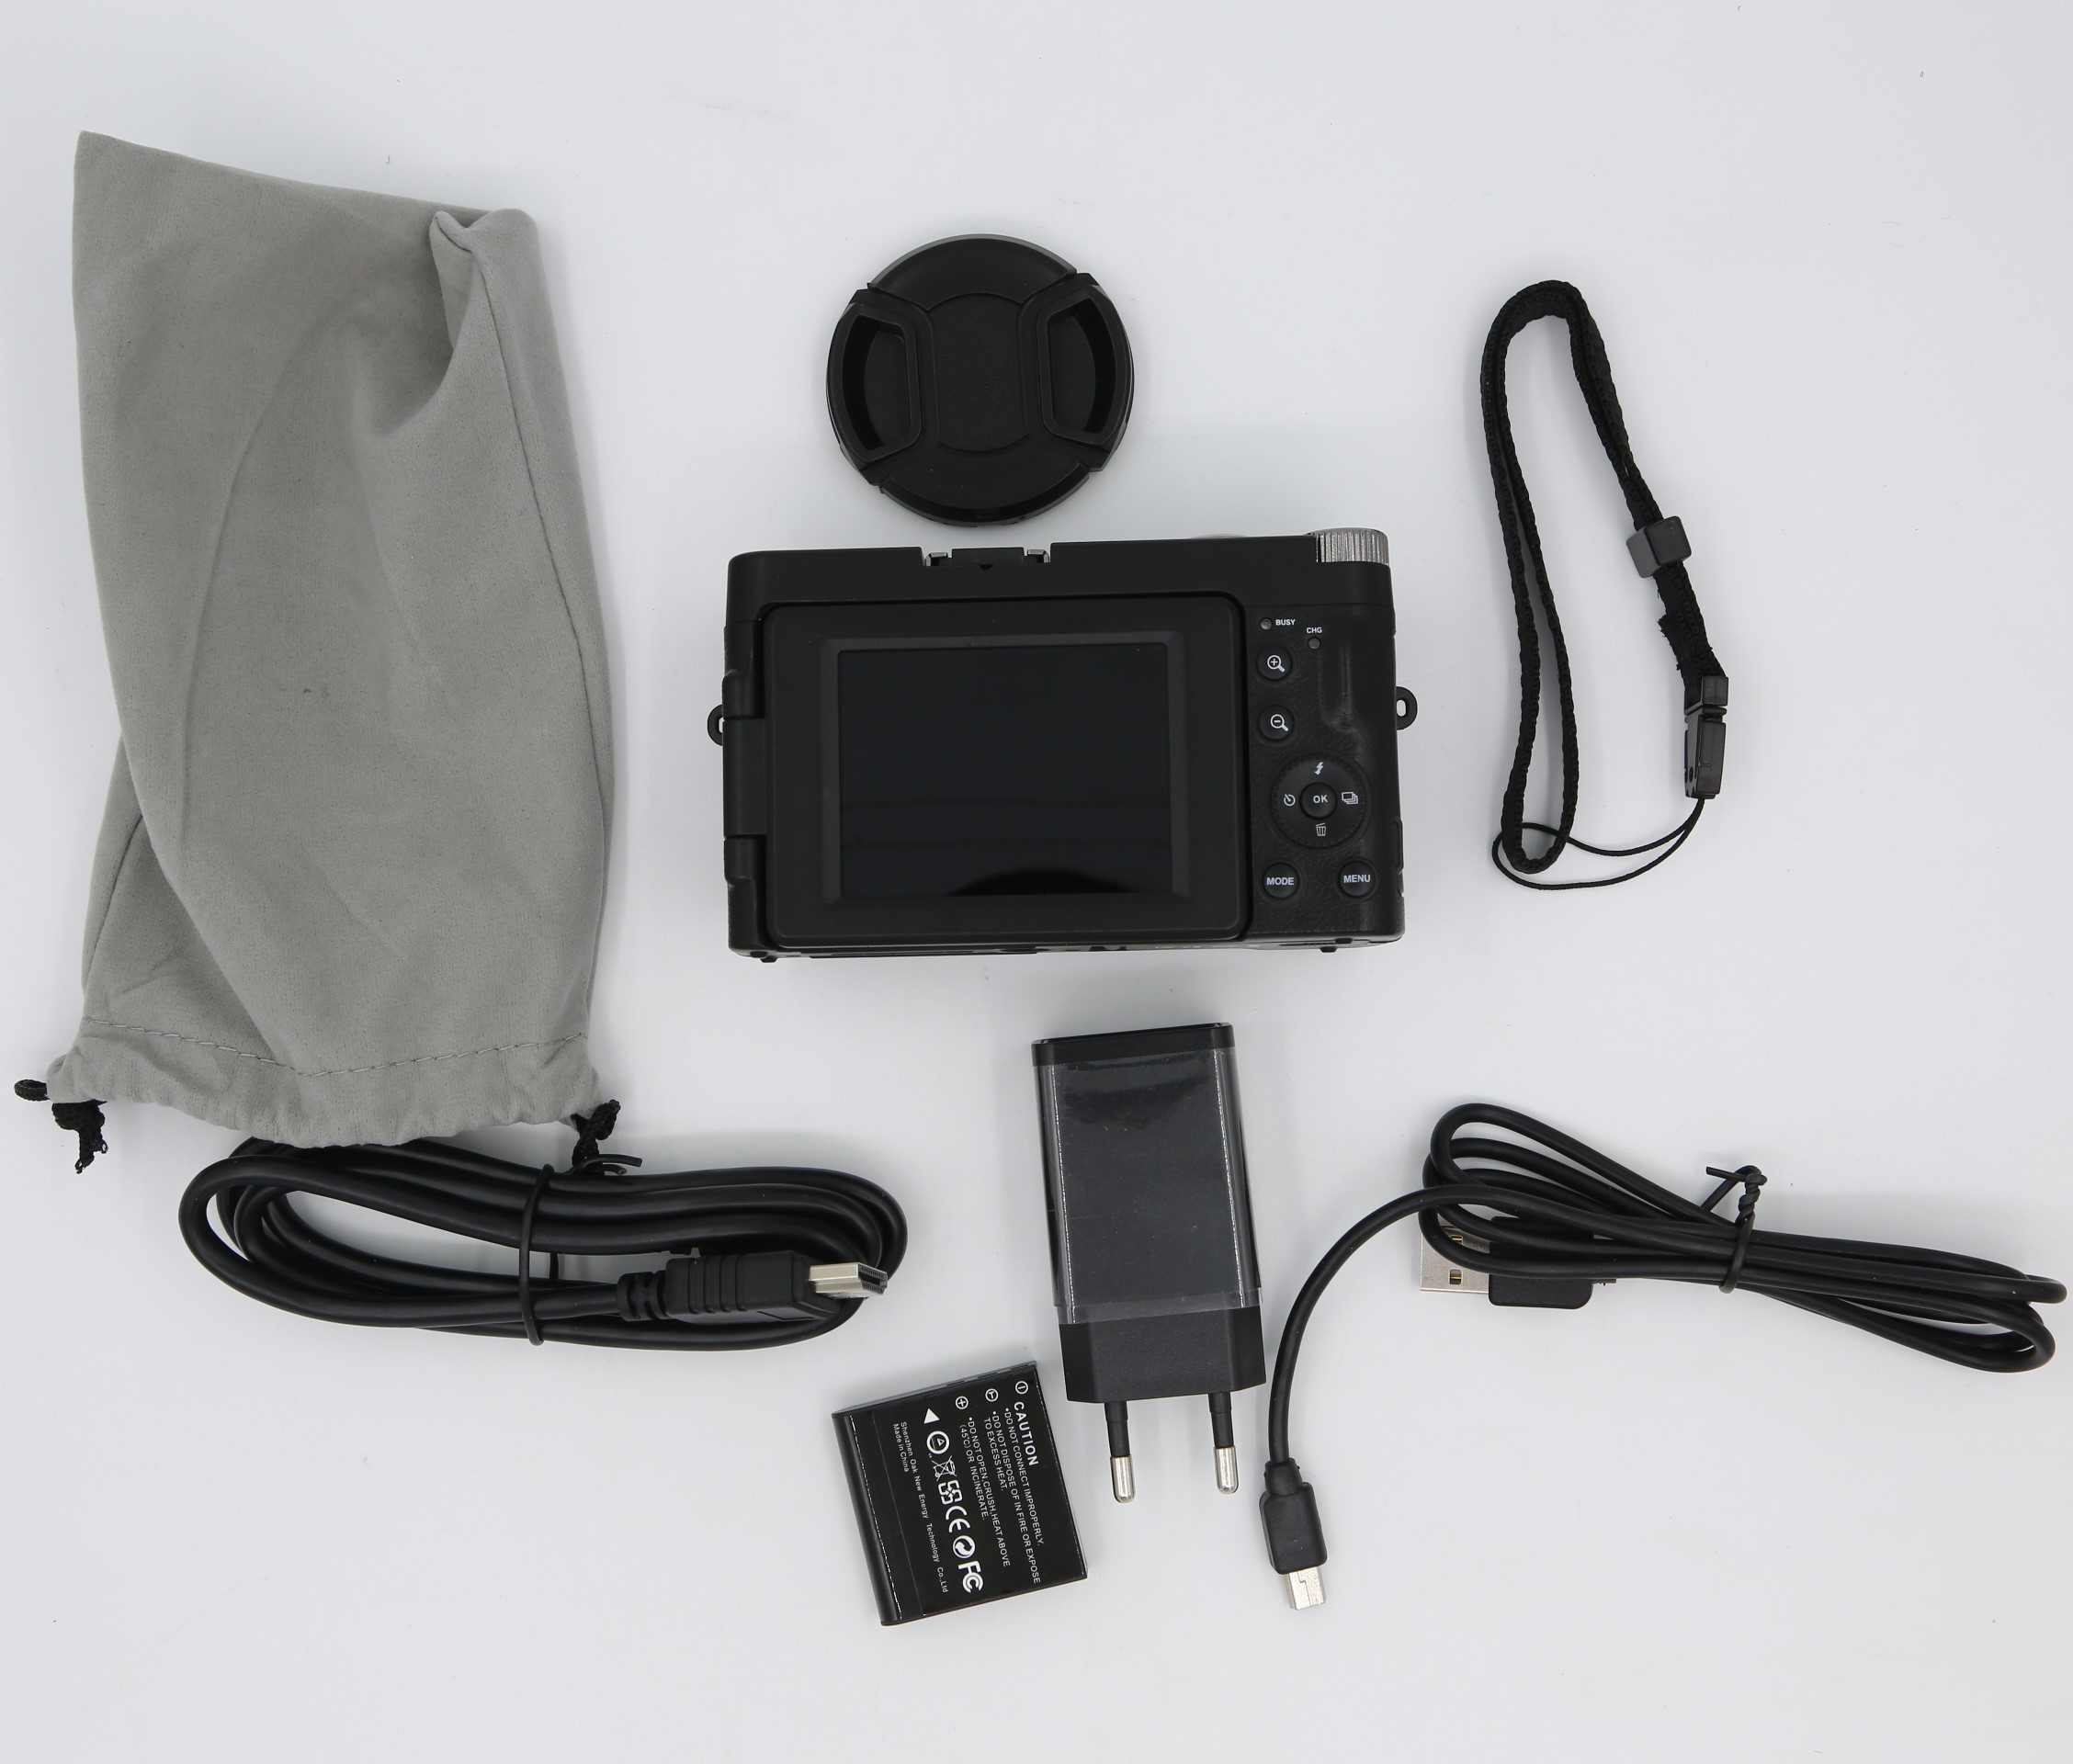 Zoom Digitalkamera schwarz 16x 1080p HD 24 Digitalkamera und MP, mit INF